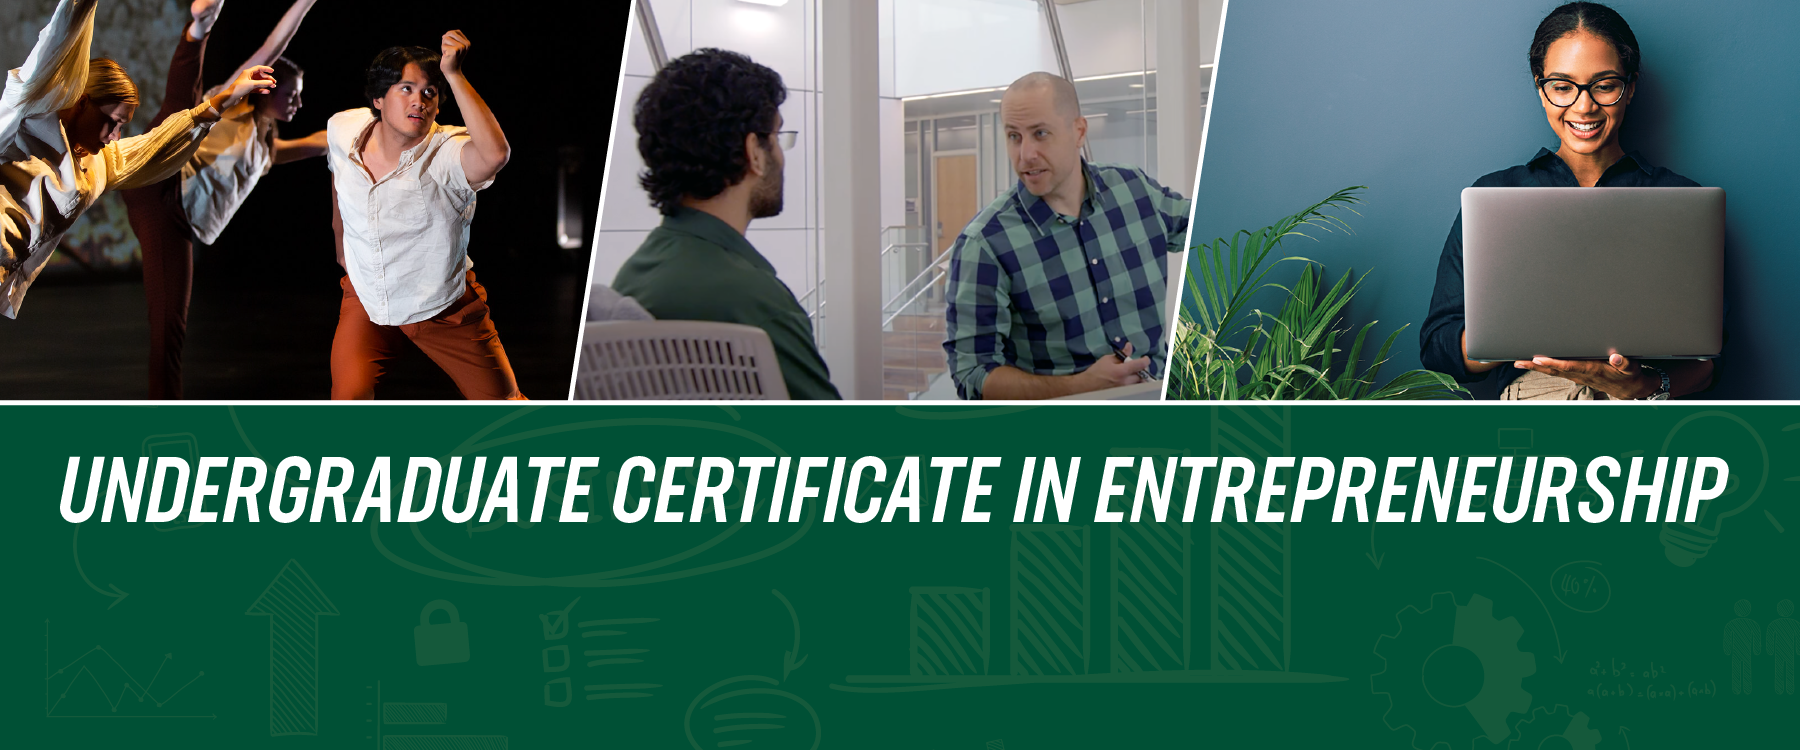 Undergraduate Certificate in Entrepreneurship